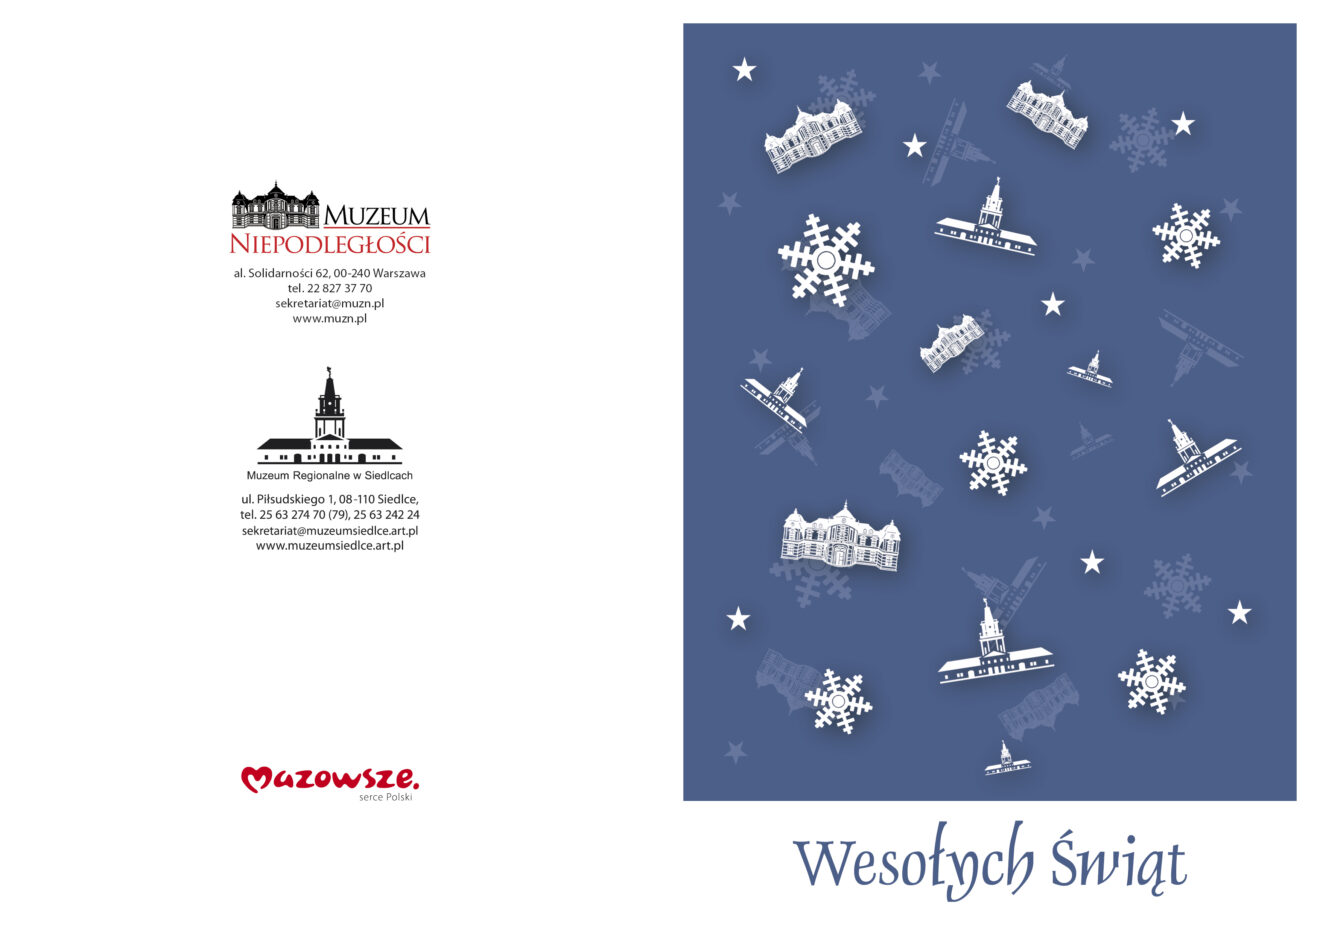 Pierwsza strona życzeń z niebieskim tłem i napisem Wesołych Świąt. Na niebieskim tle umieszczone białe logotypy muzeów z śnieżynkami i gwiazdkami.